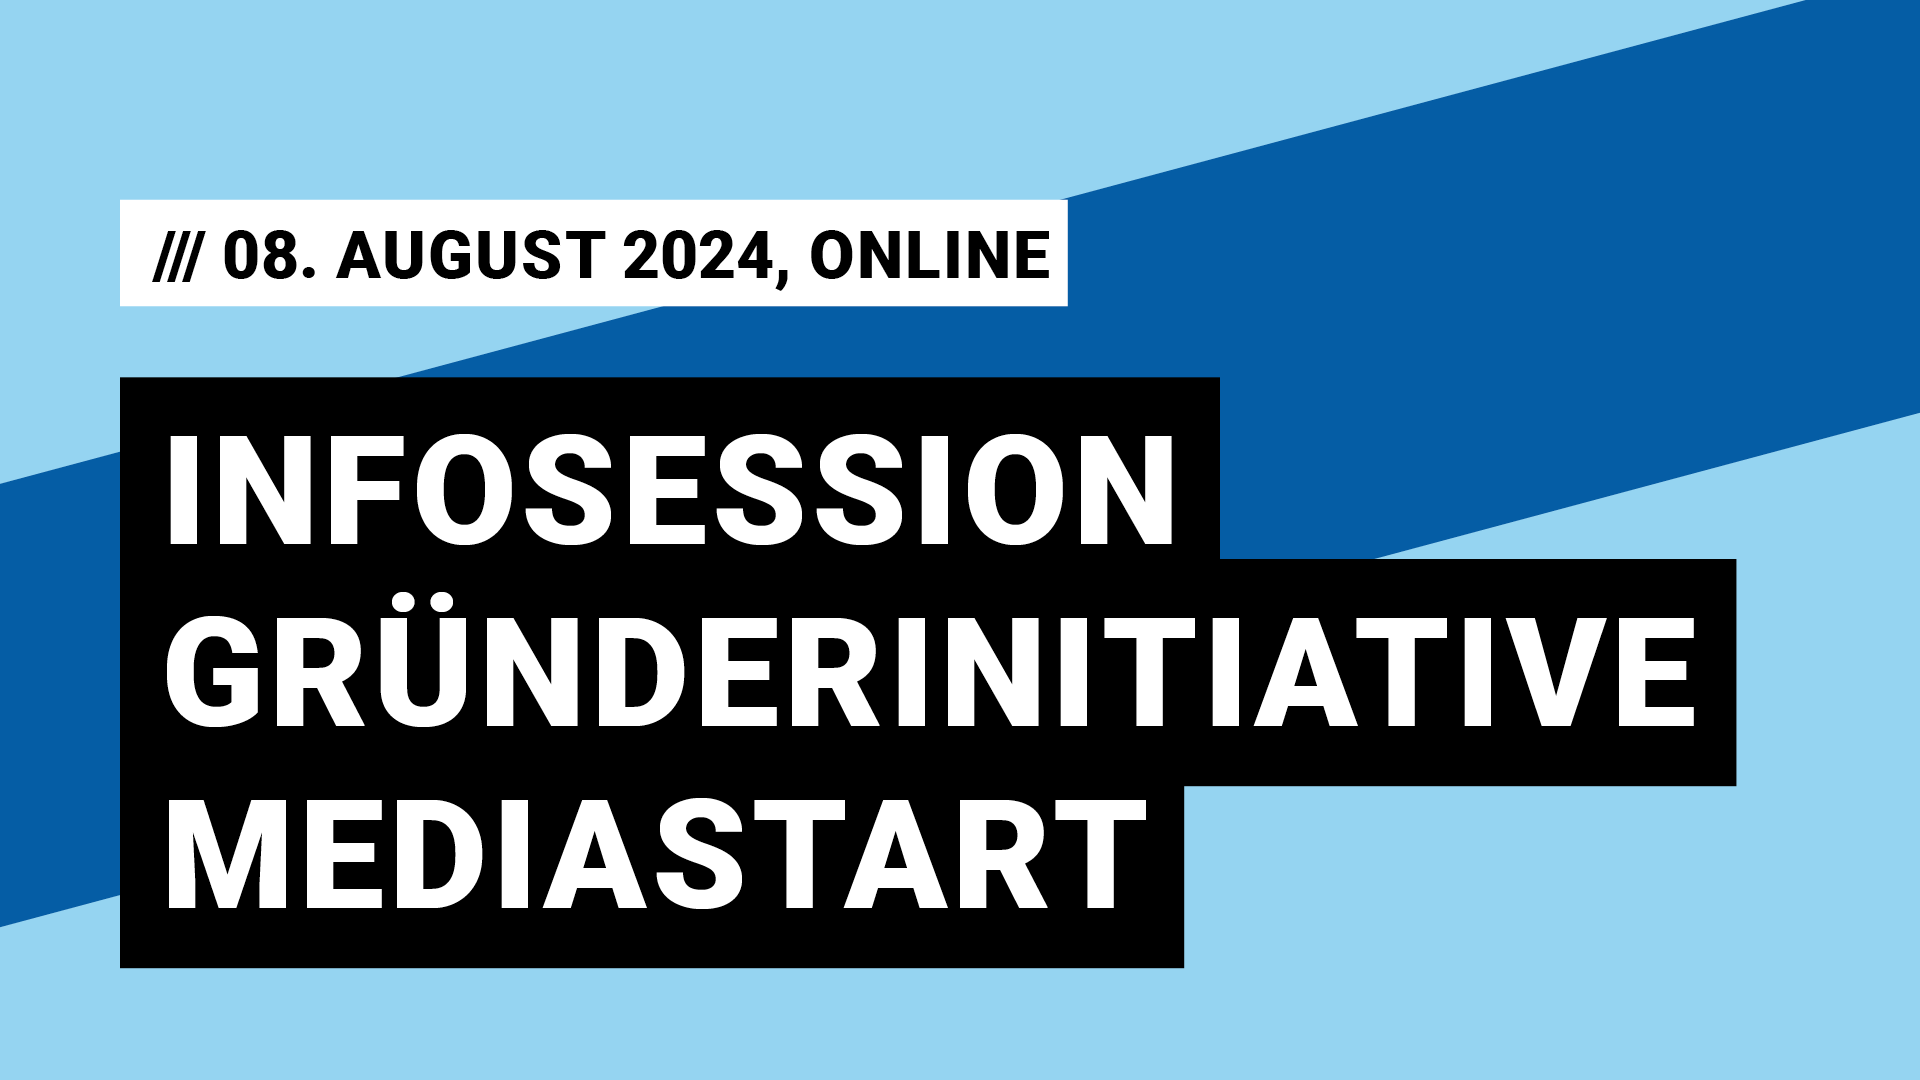 Titelbild Veranstaltung Infosession Gründerinitiative Mediastart mit Datum 08. August 2024, Online